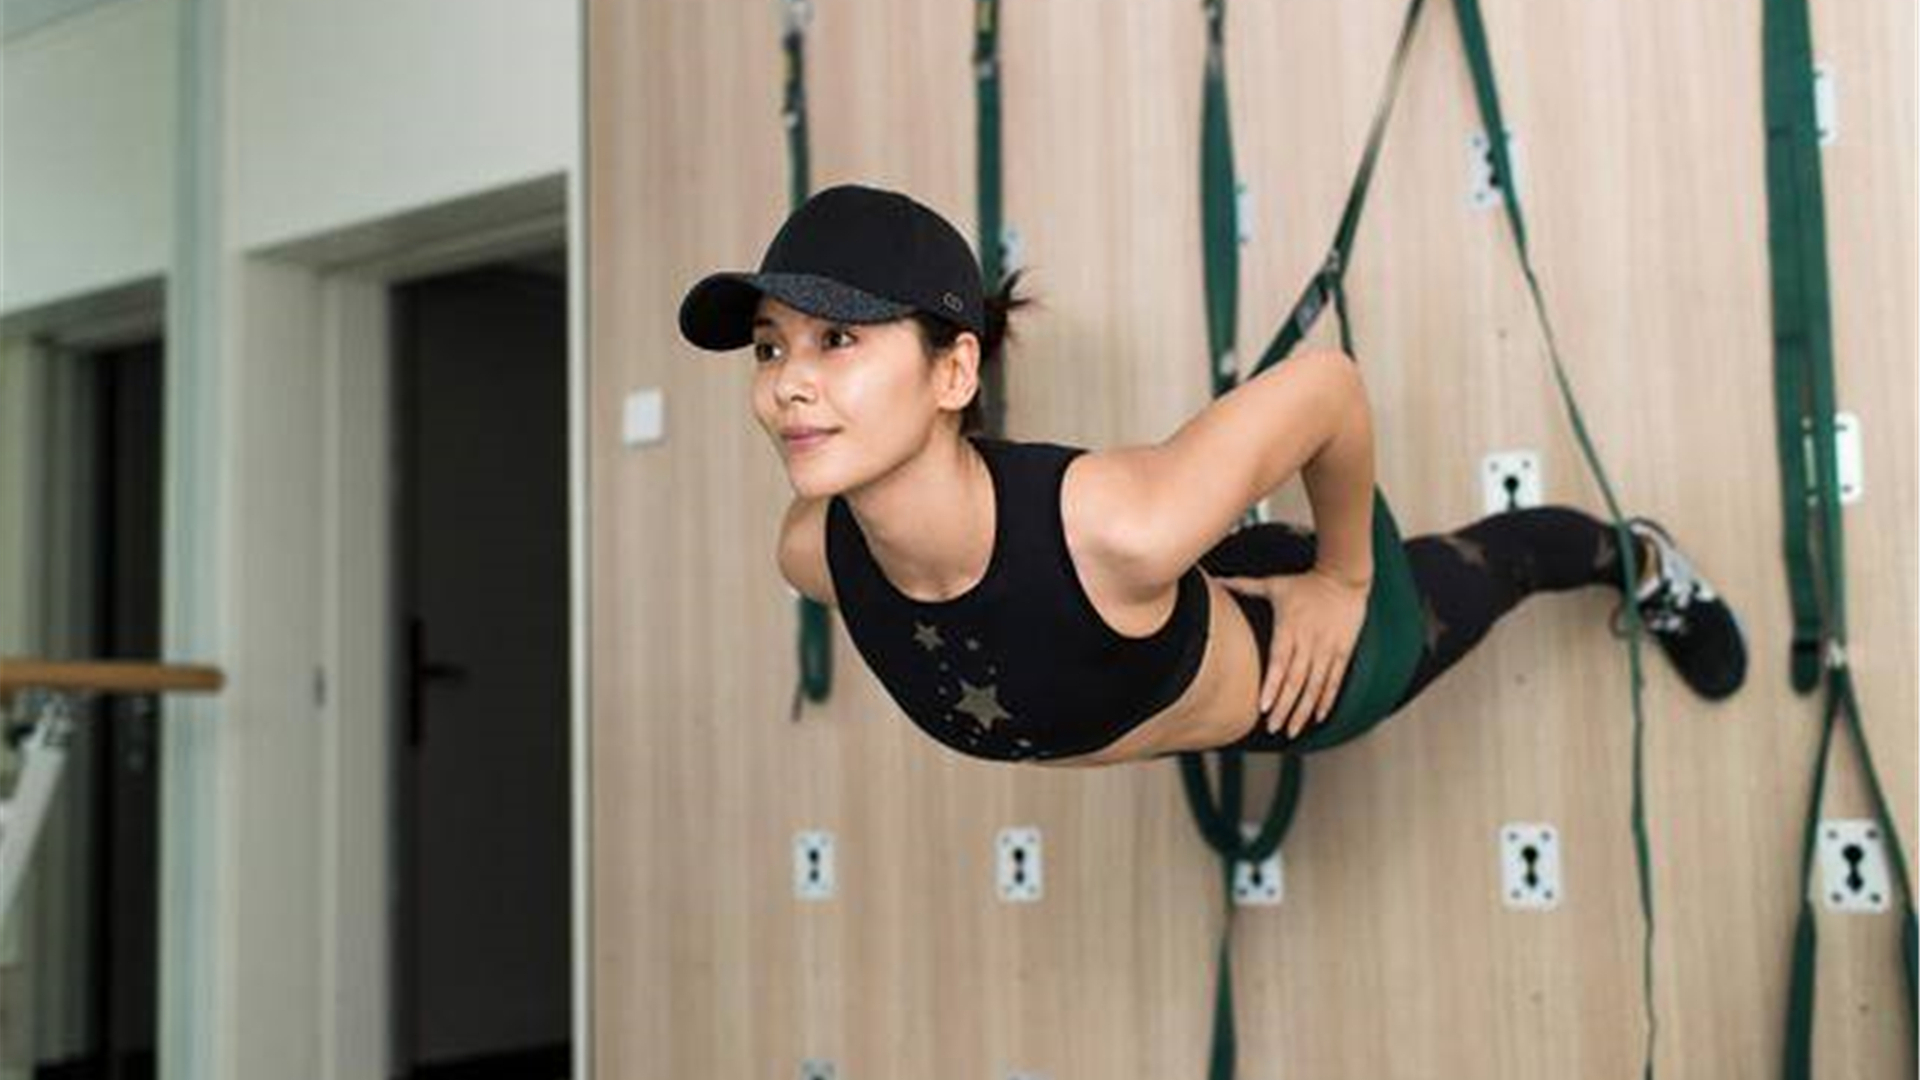 42岁刘涛健身10年,镜子里的美背吸引眼睛,爱运动的女人有魅力